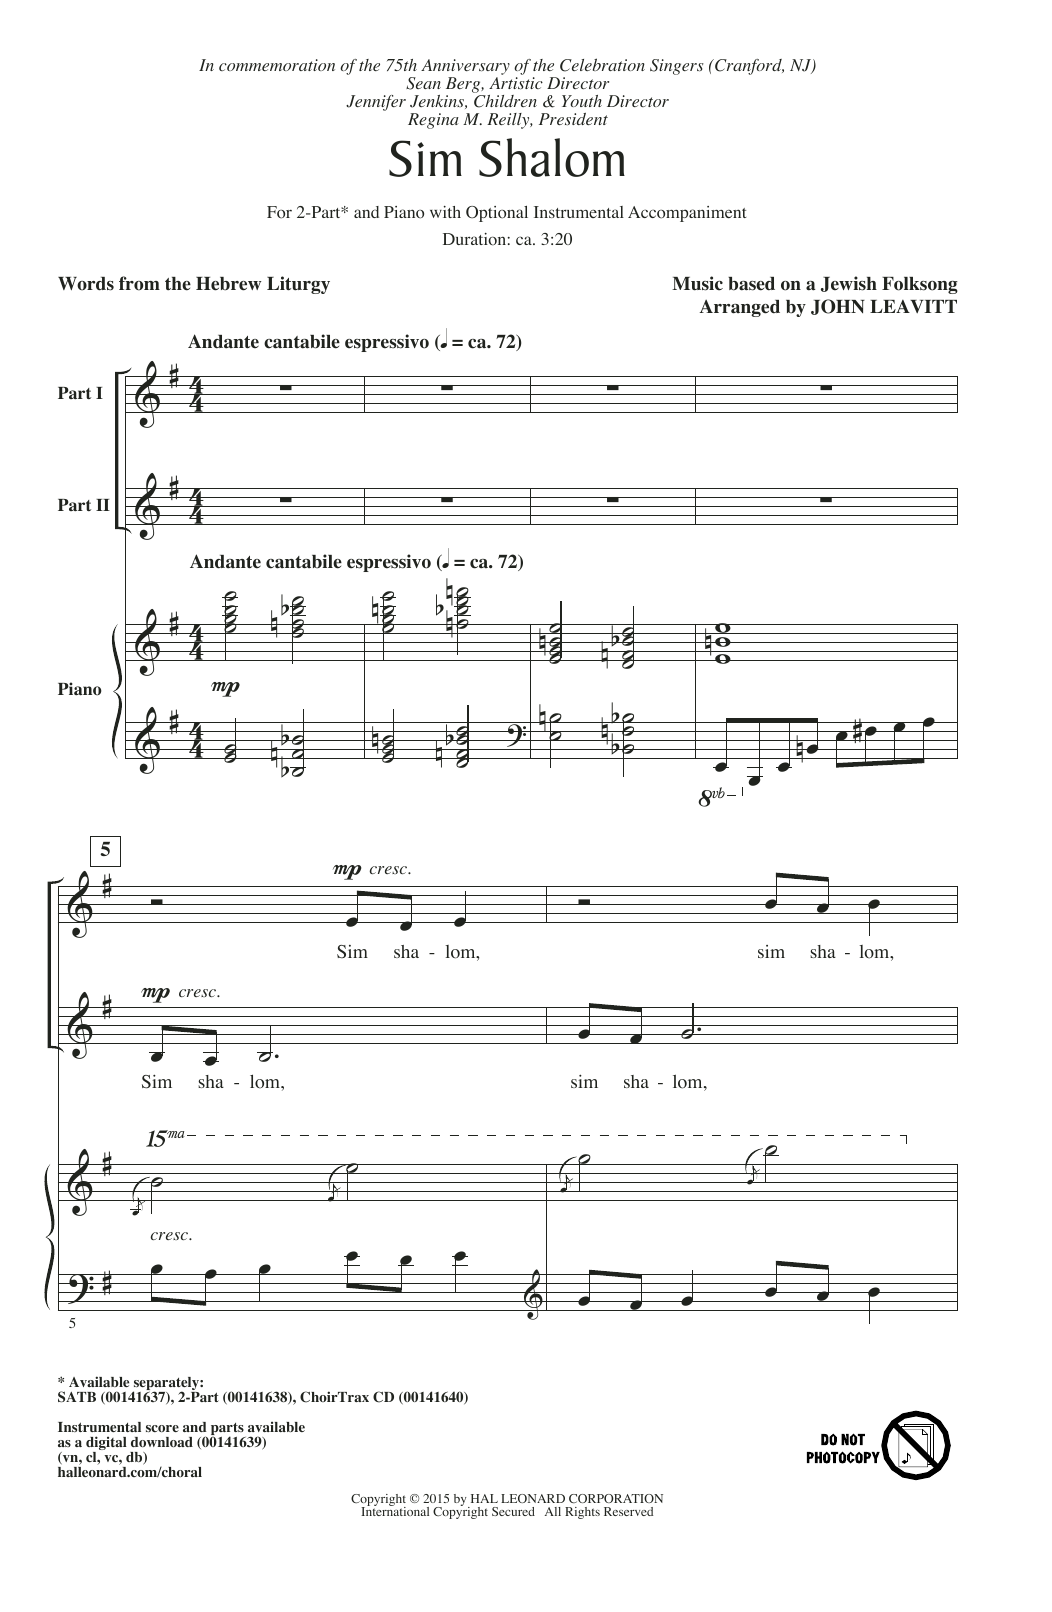 John Leavitt Sim Shalom Sheet Music Notes & Chords for 2-Part Choir - Download or Print PDF